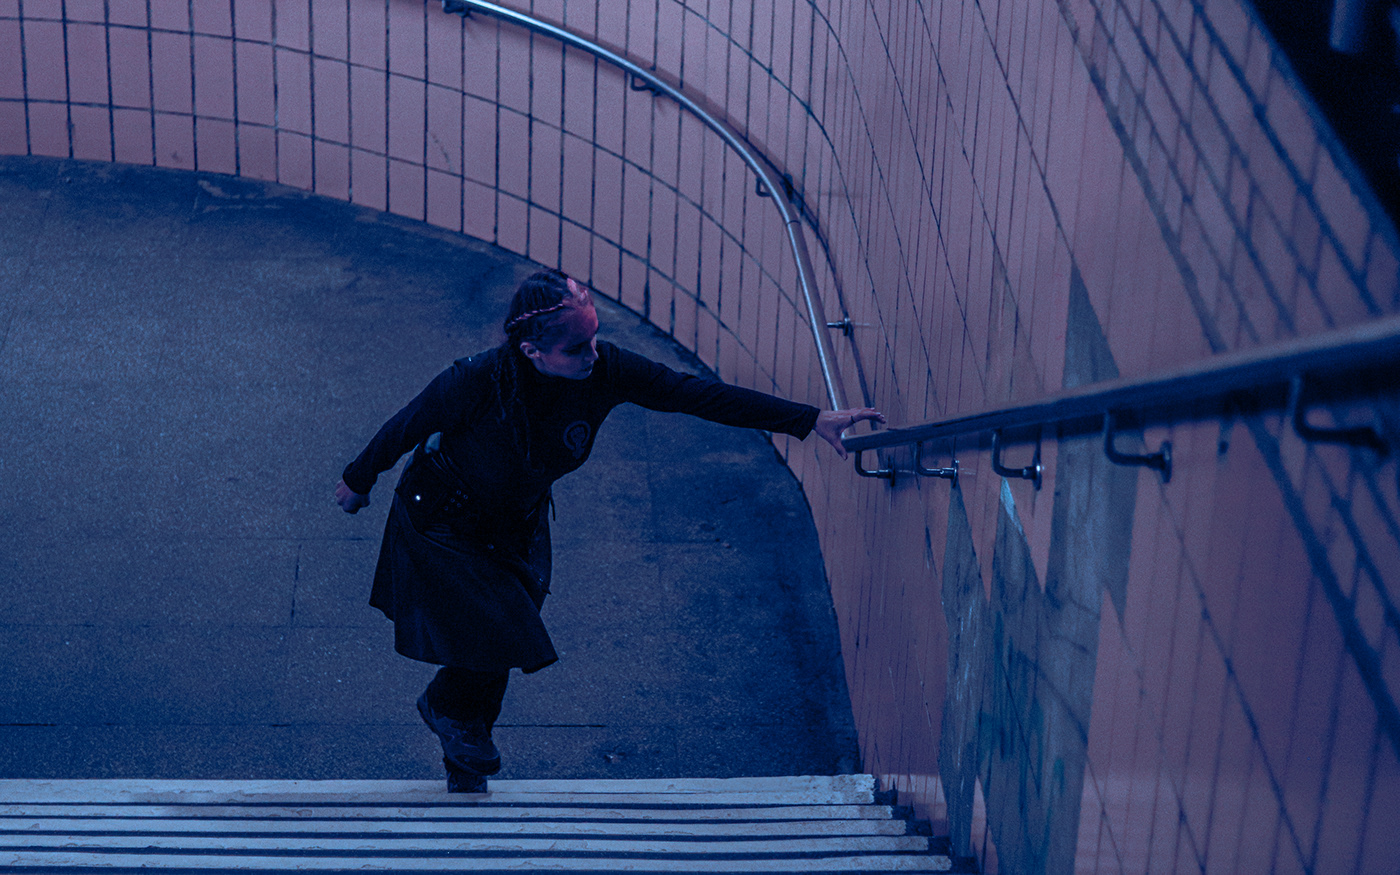 possession budoir berlin nocturne feminism feminist Girl Power cinematography Horrorfilm